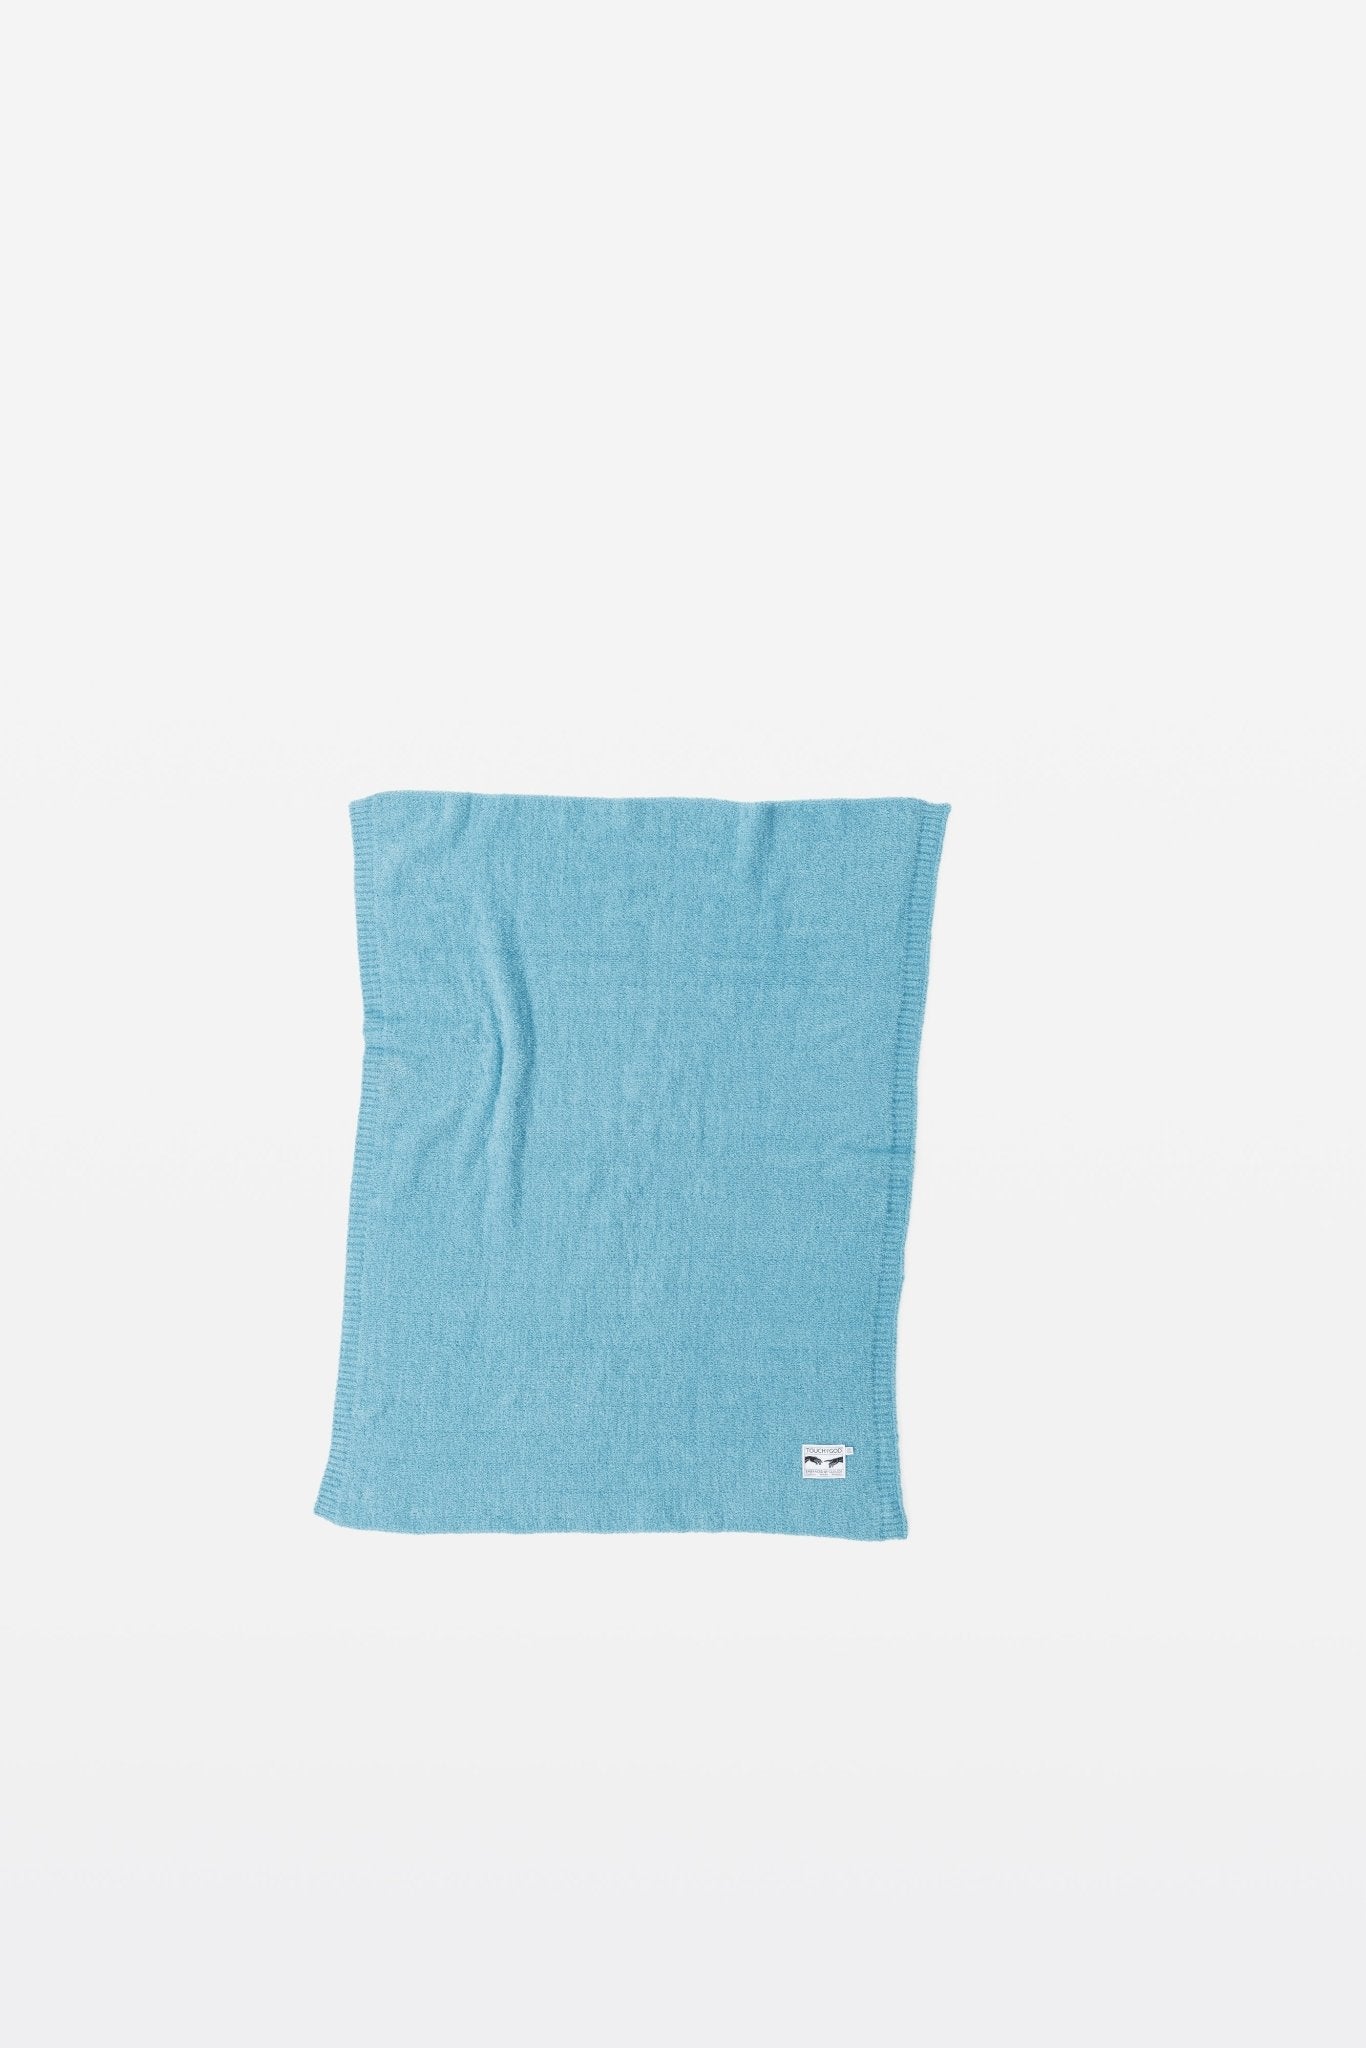 Aqua Blue Smart Traveller | Luxury Plush Travel Pillow Throw Blanket - Throw - Touchofgod.co